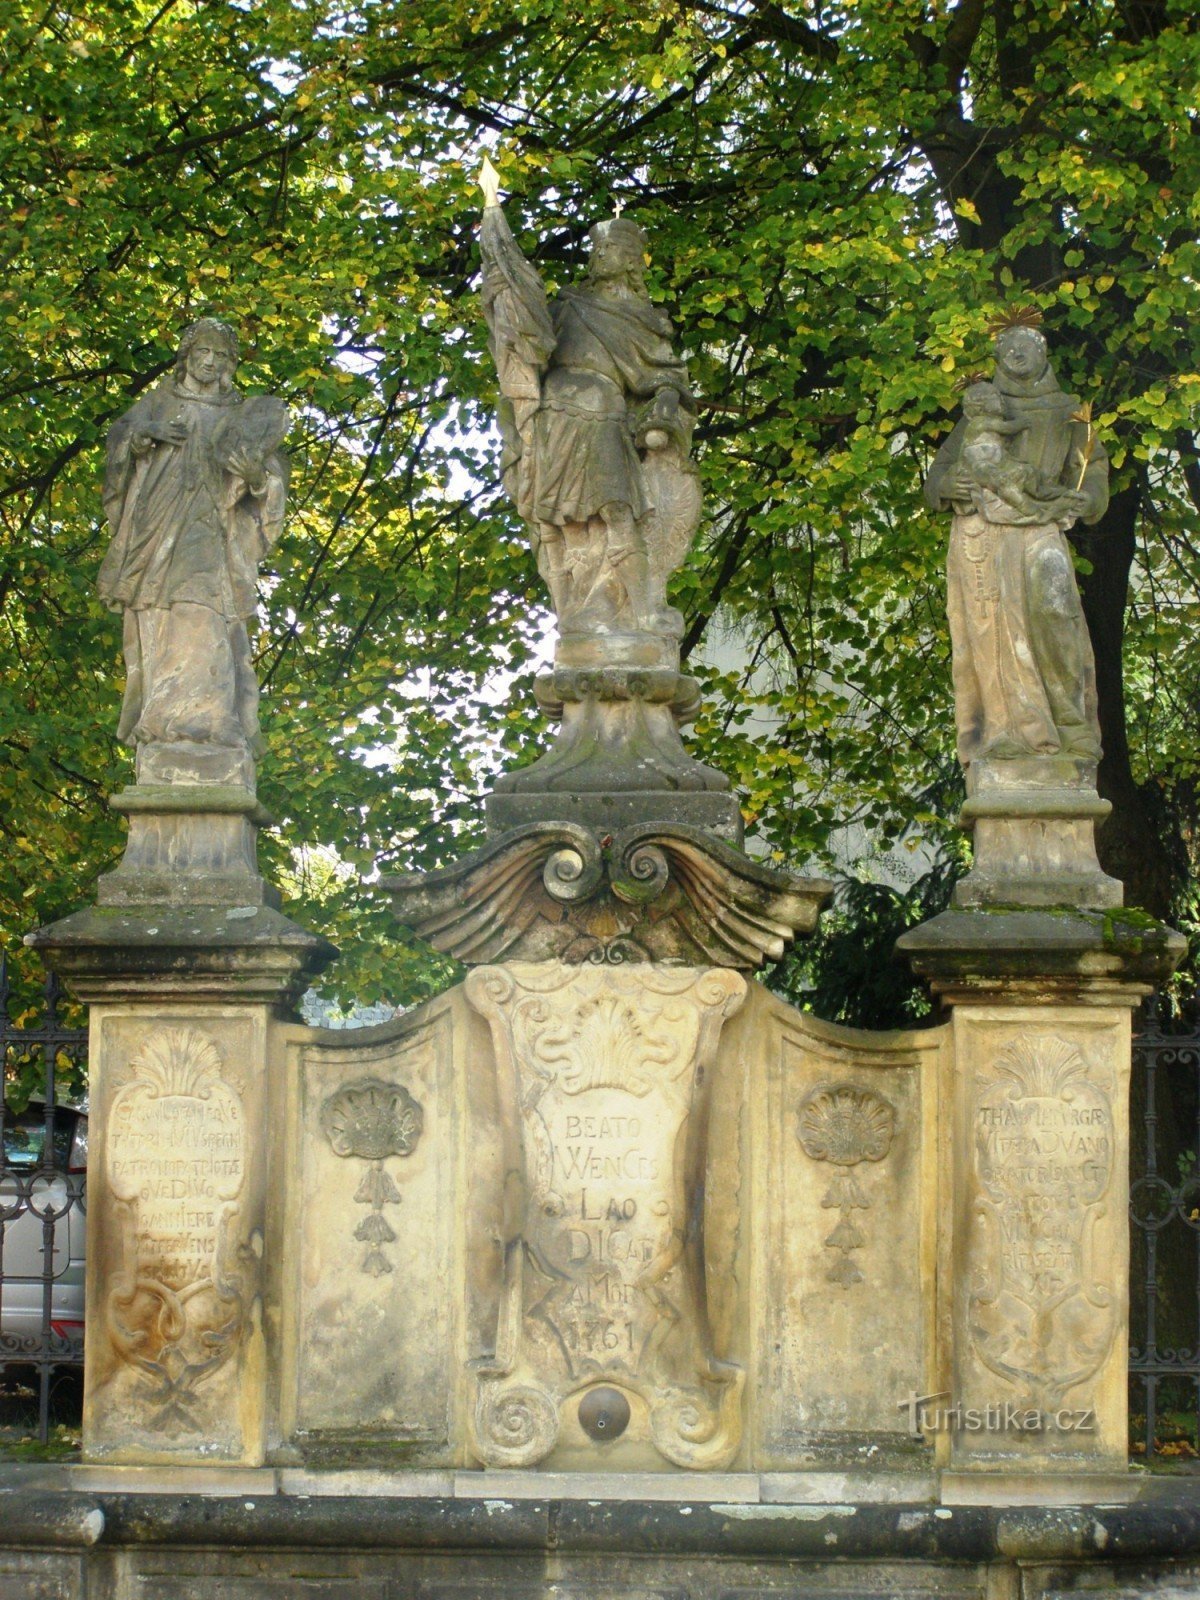 Turnov - fontän med en staty av St. Wenceslas